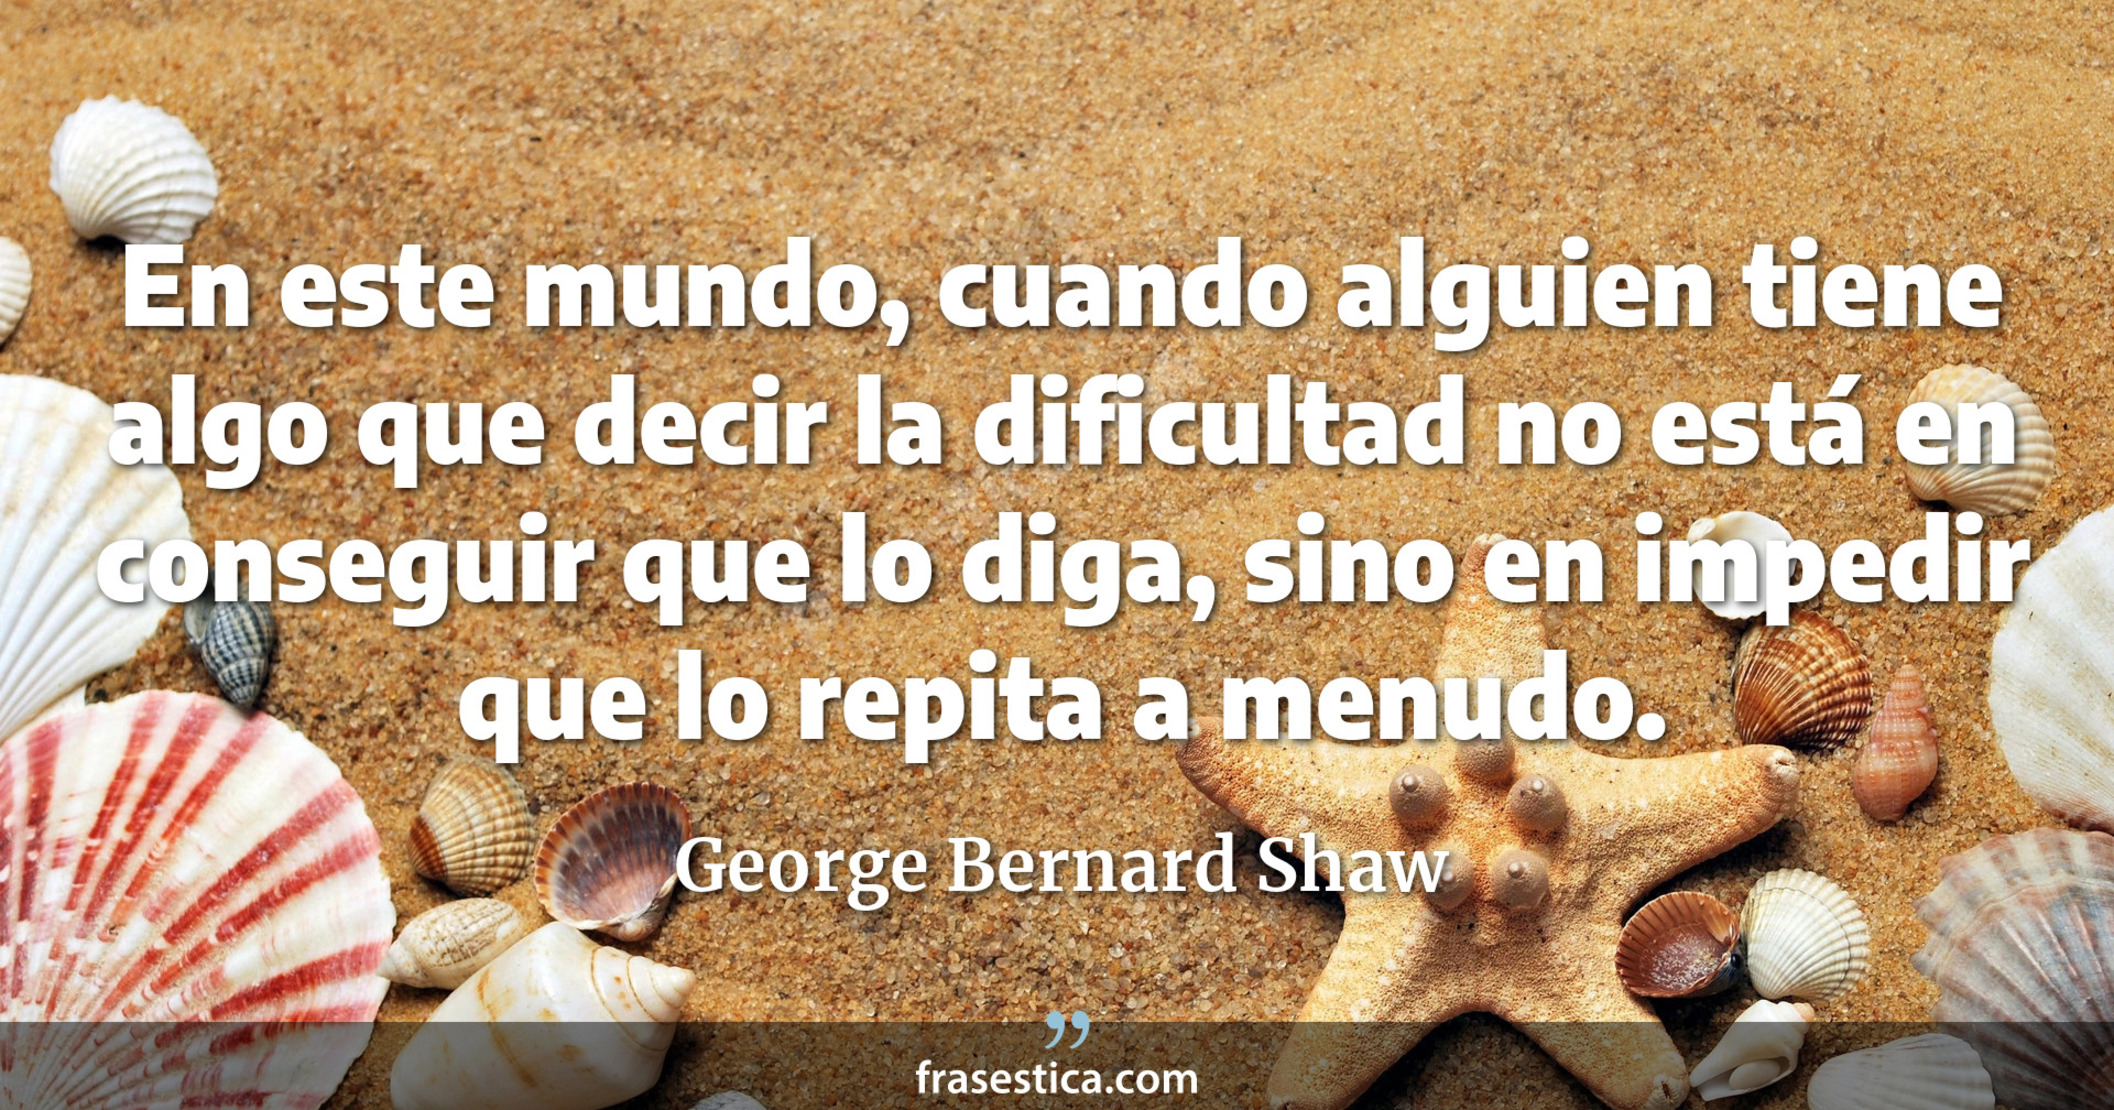 En este mundo, cuando alguien tiene algo que decir la dificultad no está en conseguir que lo diga, sino en impedir que lo repita a menudo. - George Bernard Shaw